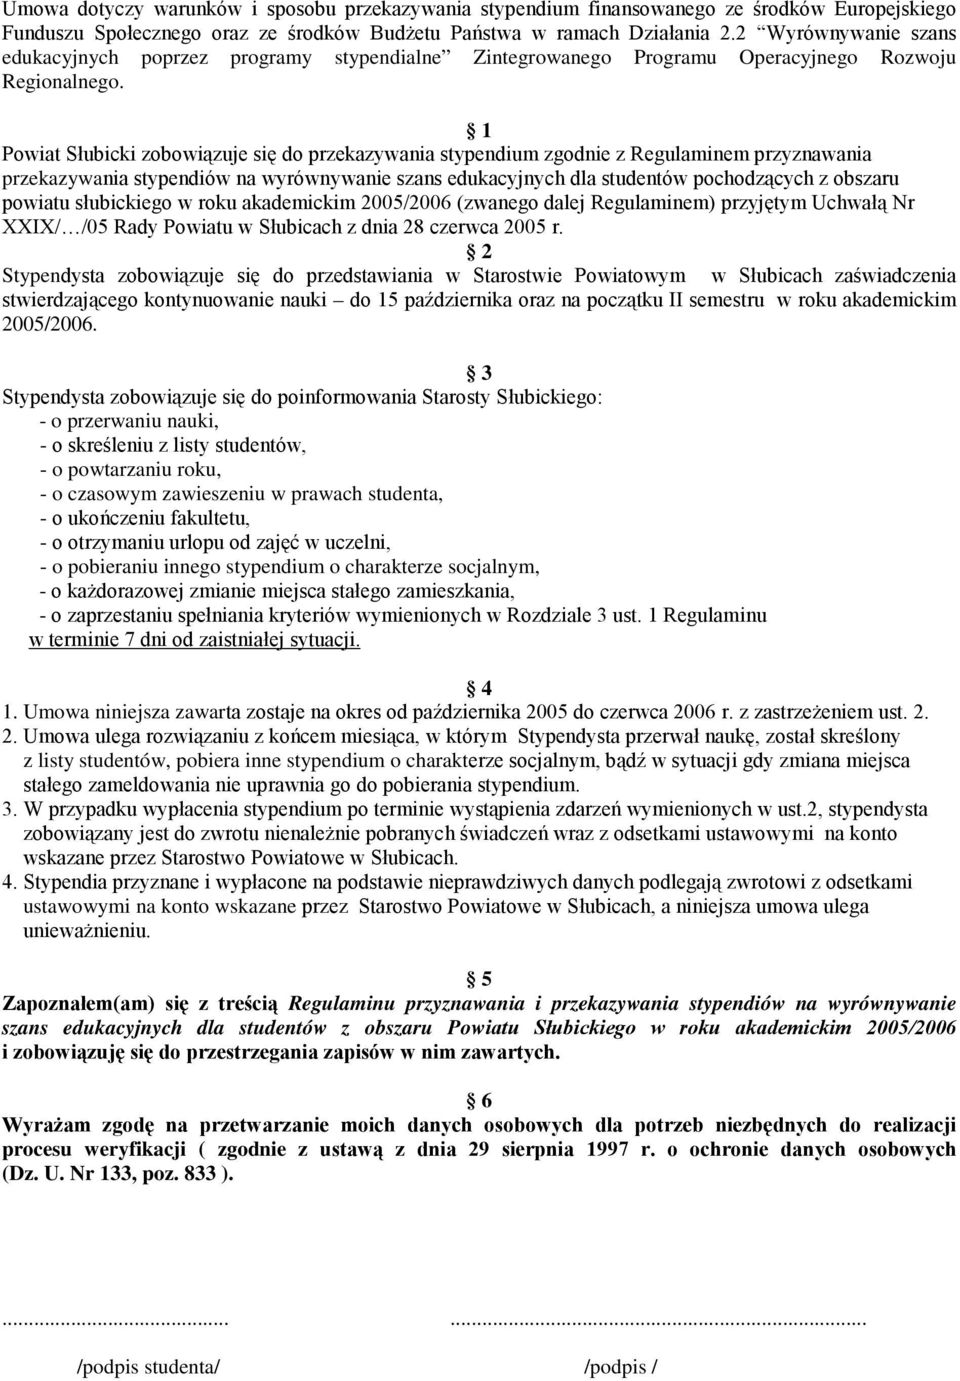 1 Powiat Słubicki zobowiązuje się do przekazywania stypendium zgodnie z Regulaminem przyznawania przekazywania dla studentów pochodzących z obszaru powiatu słubickiego w roku akademickim 2005/2006